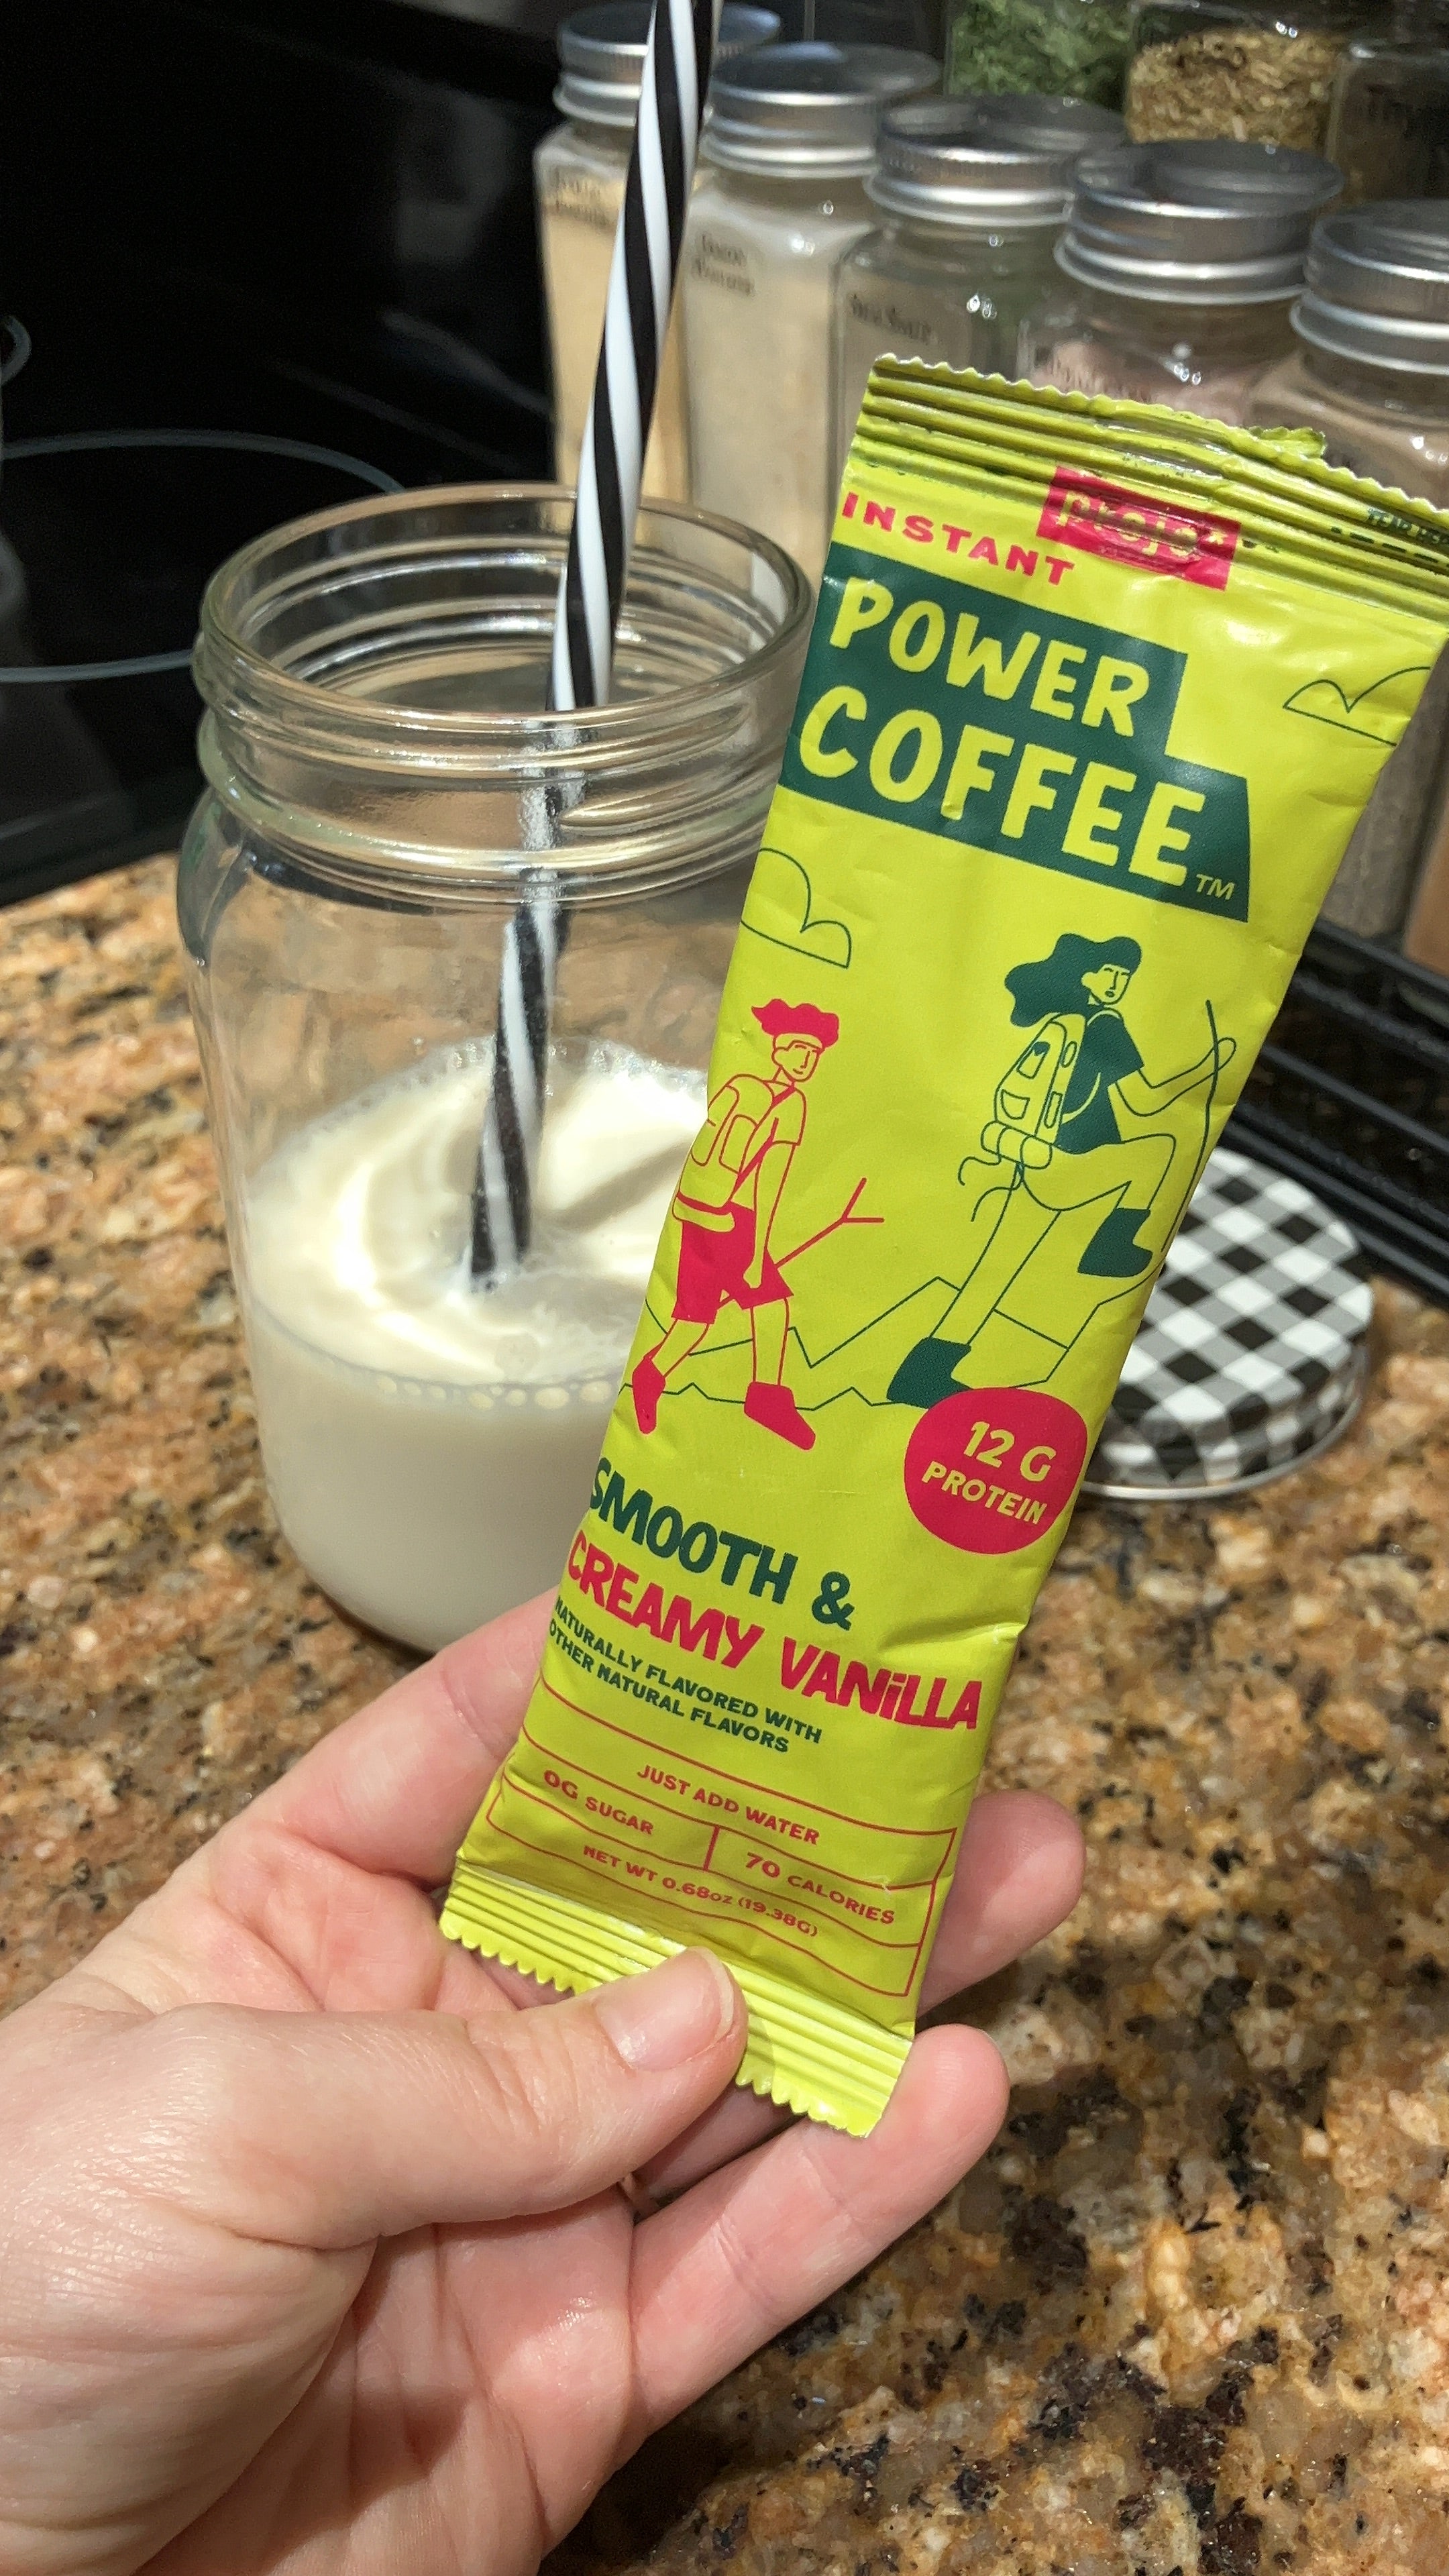 Projo* Instant Power Coffee - Smooth & Creamy Vanilla Flavor